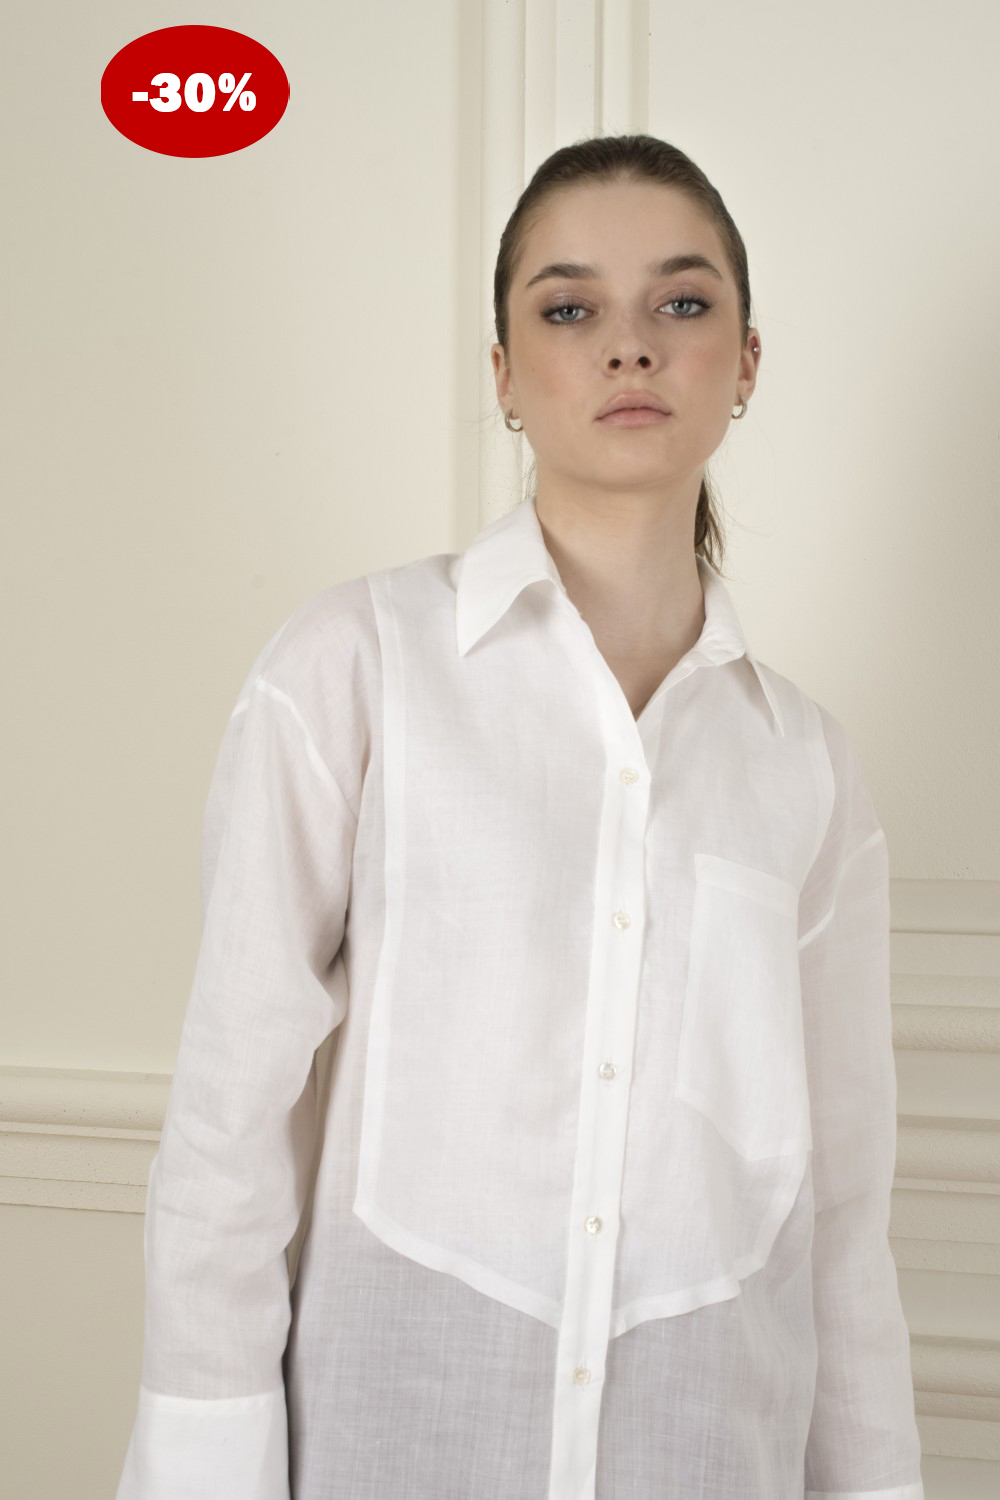 Купити білі жіночі довгі сорочки: розробляємо унікальний стиль одягу